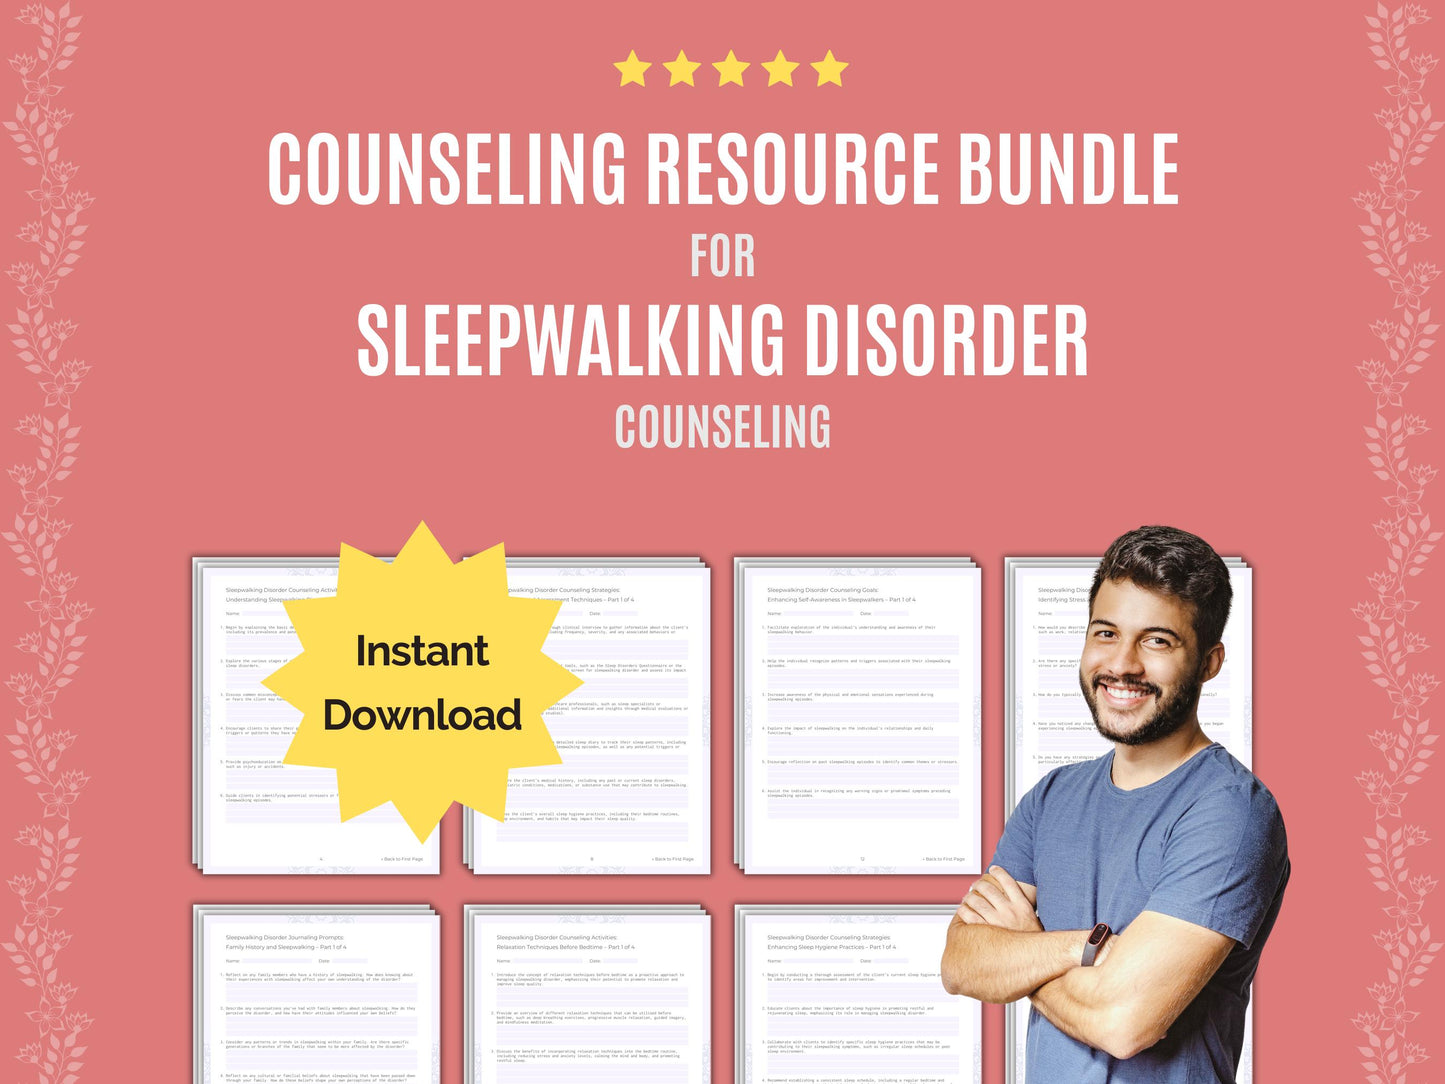 Worksheet, Sleepwalking Therapy, Sleepwalking Bundle, Sleepwalking Tool, Mental Health, Therapist, Counseling, Counselor, Sleepwalking Idea, Workbook, Resource, Template, Sleepwalking